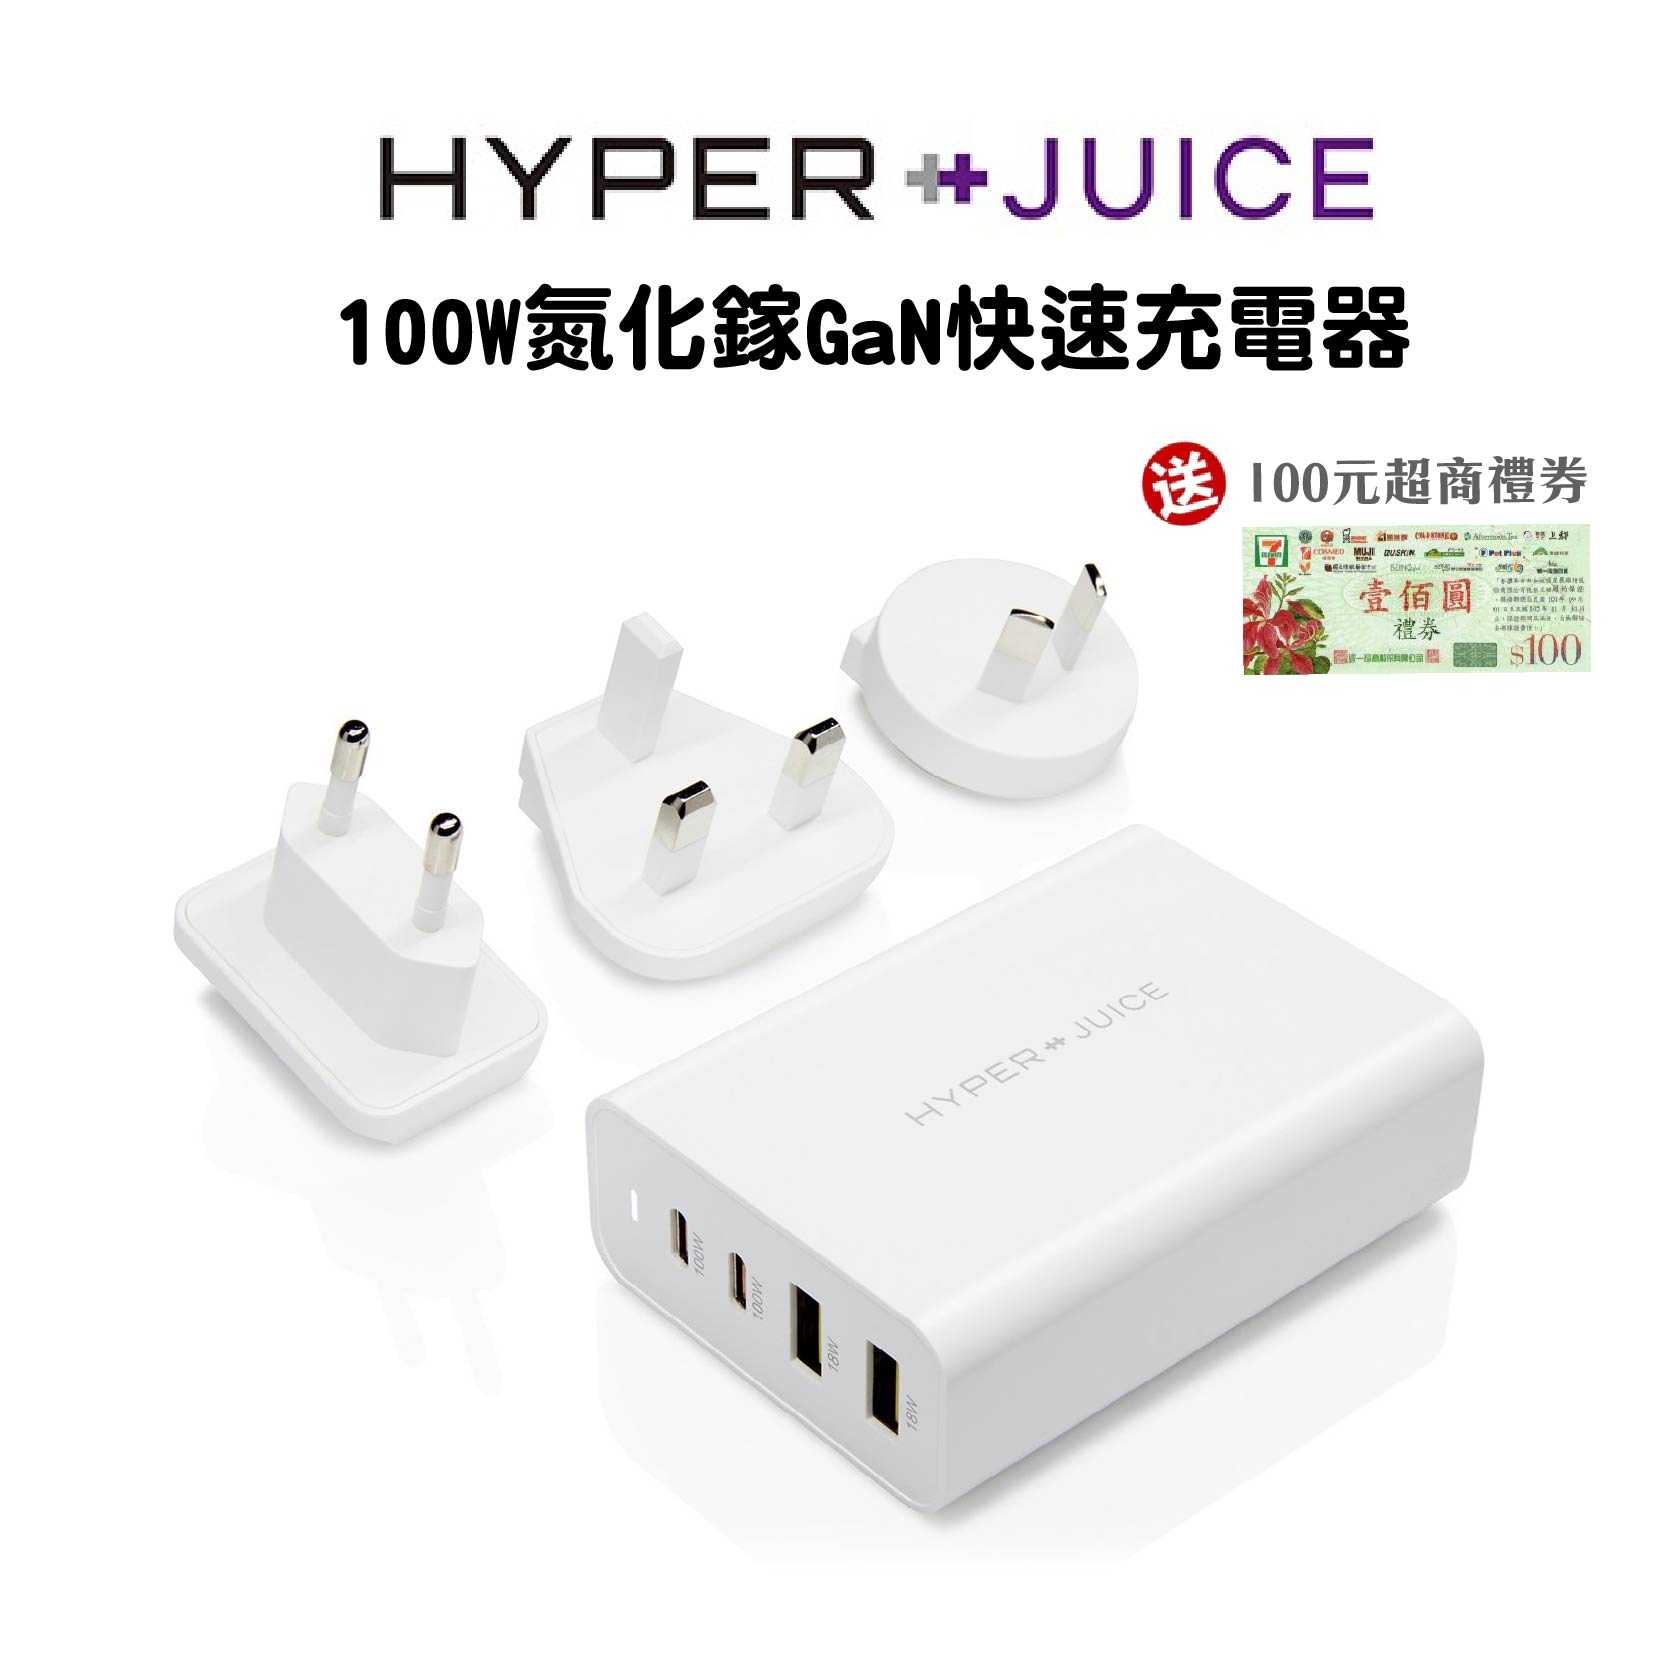 現貨+100元禮券『HyperJuice 100W氮化鎵GaN快速充電器』多國轉接頭 快充 USB-C